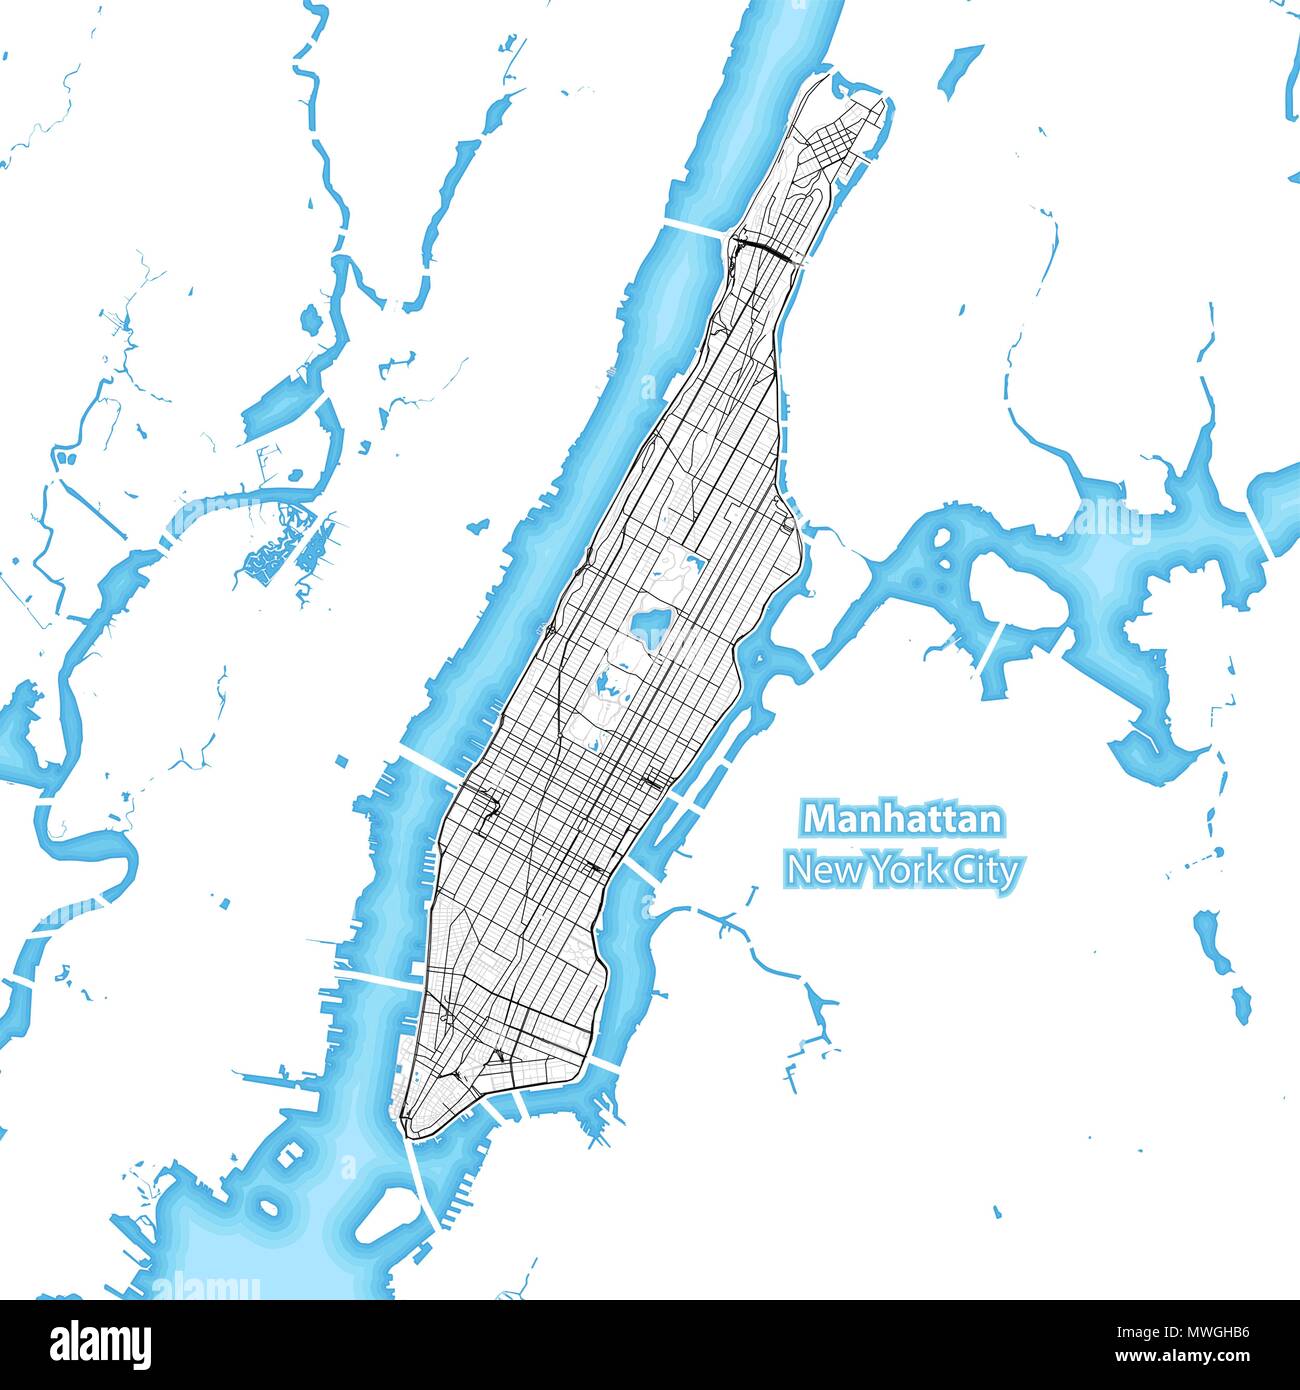 Mappa dell'isola di Manhattan, New York City, Indonesia con le maggiori autostrade e strade che circondano le isole e isolette Illustrazione Vettoriale